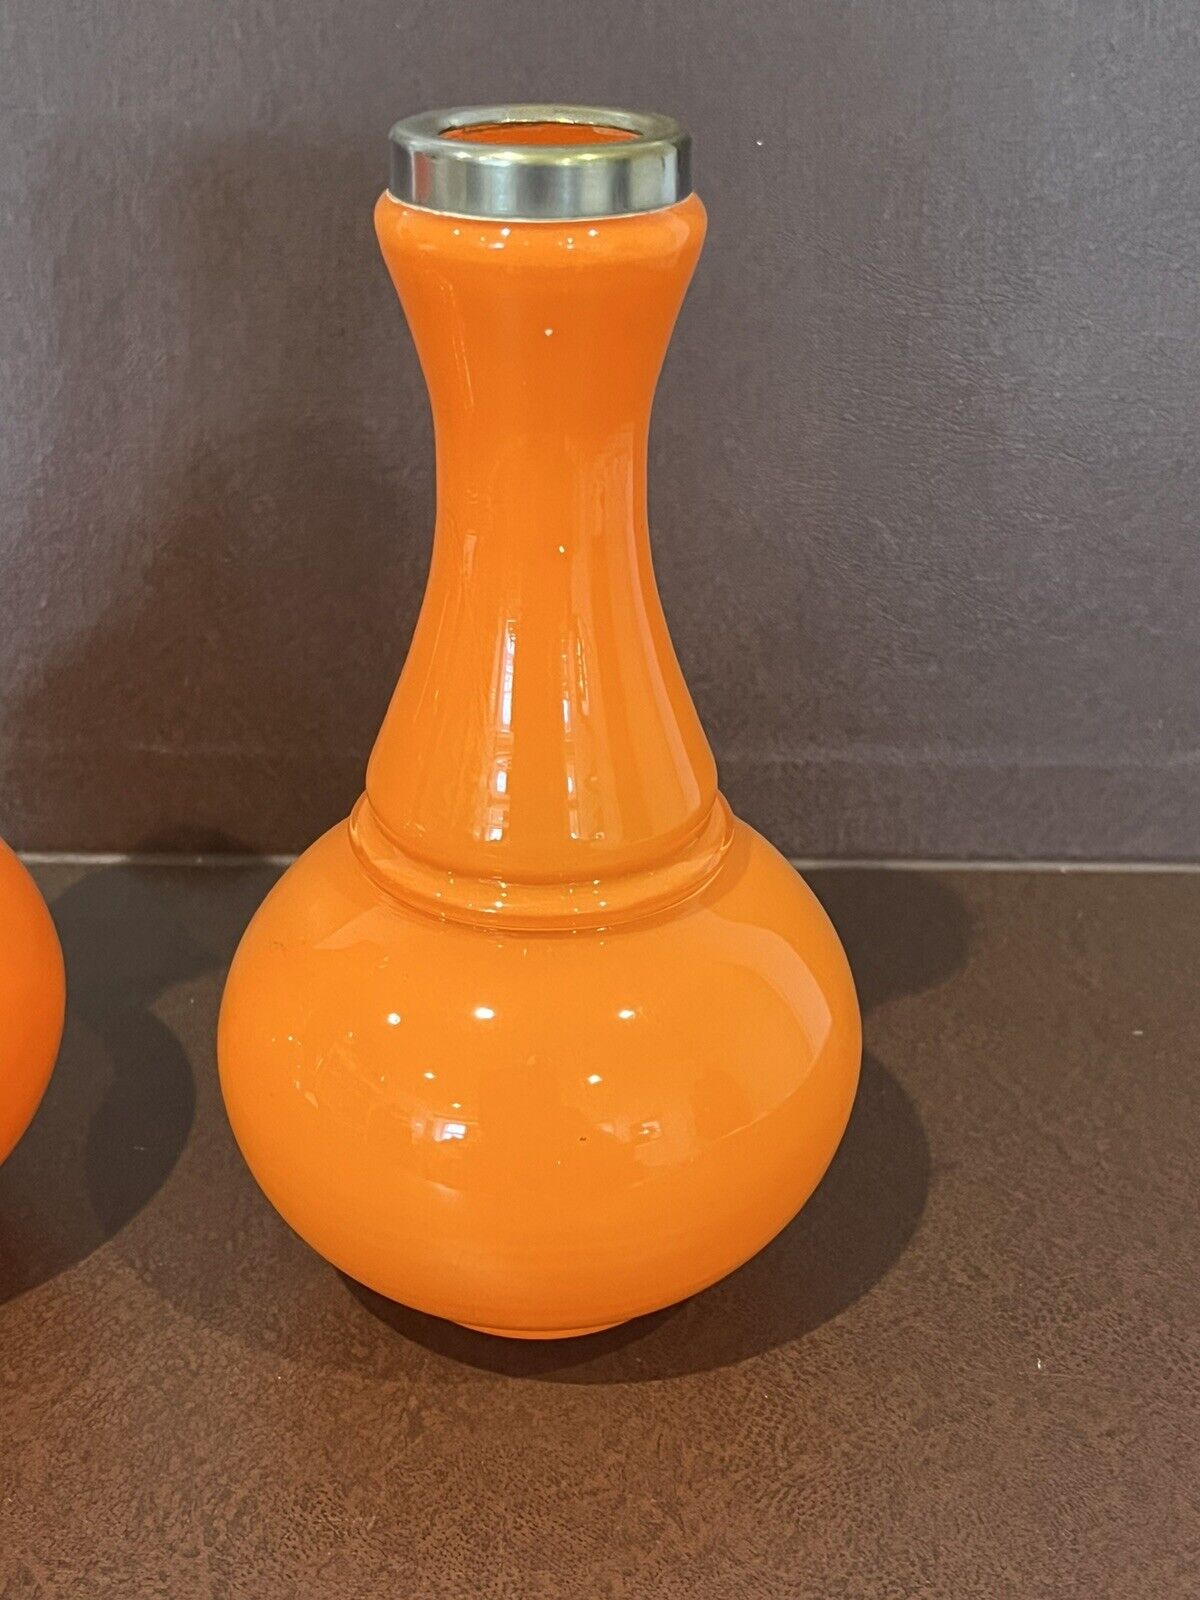 Mid Century Orange Glass Vases